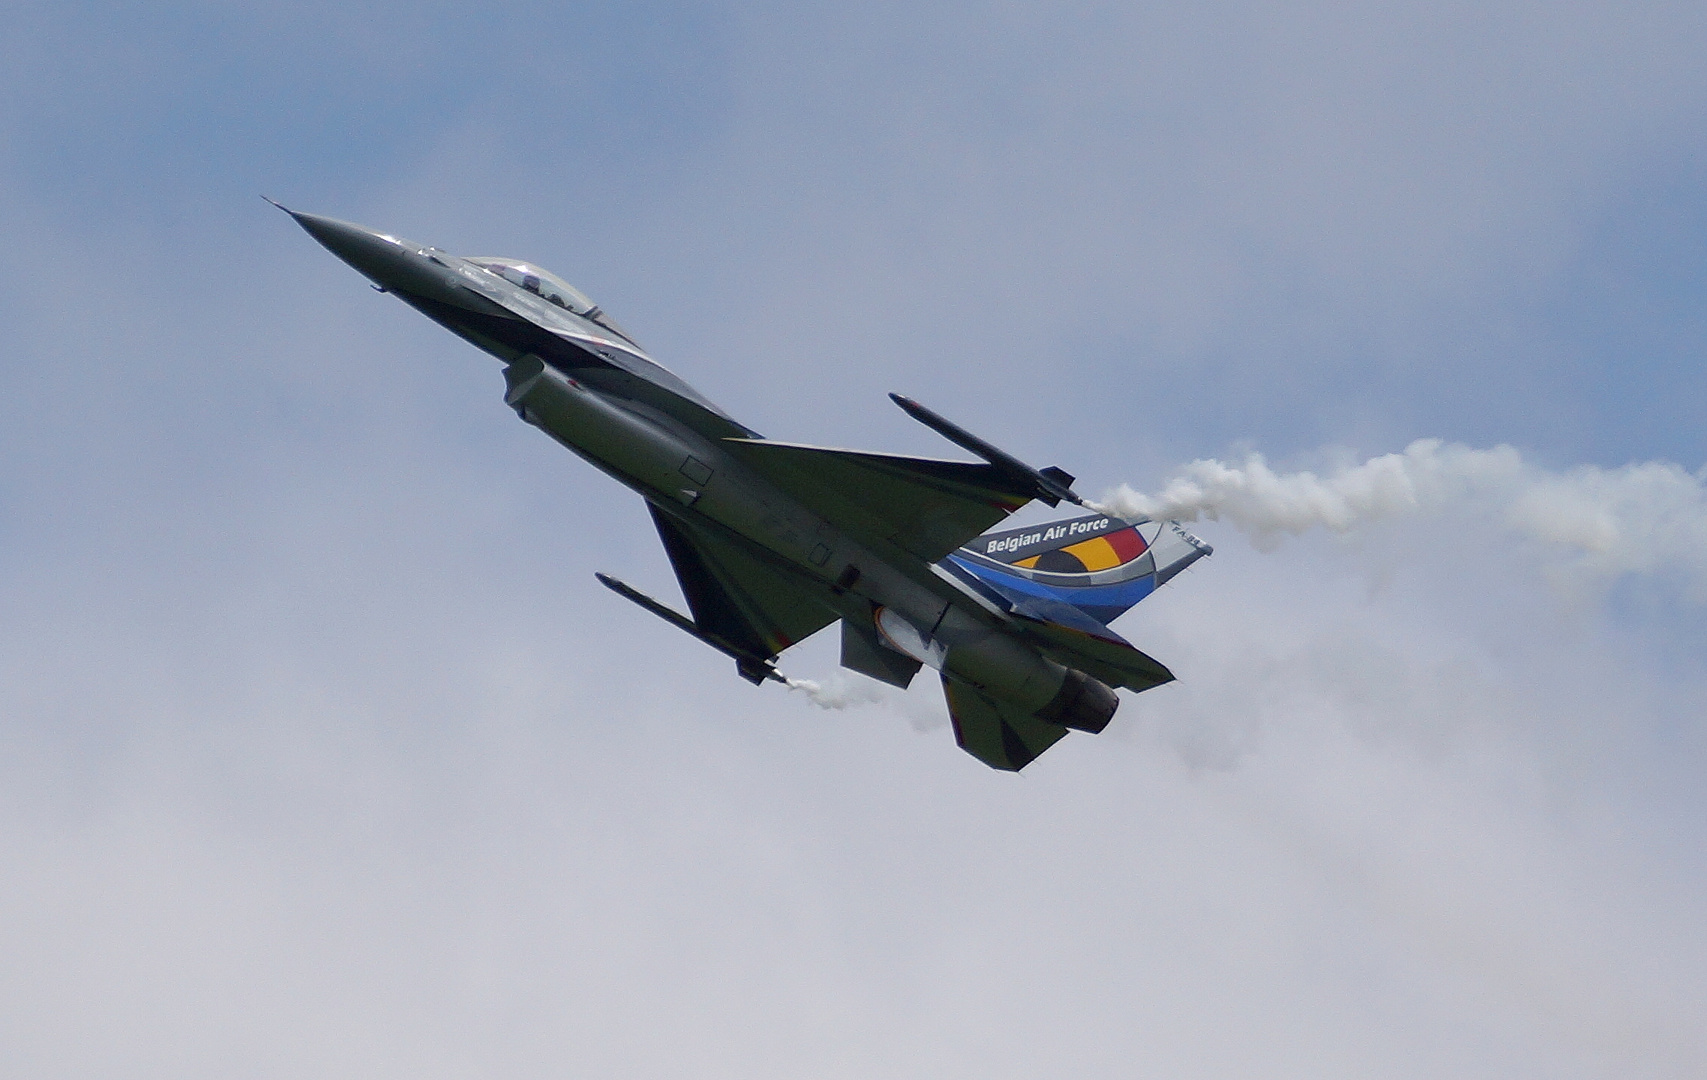 Airpower 2013 - Zeltweg/Austria - 29.06.2013